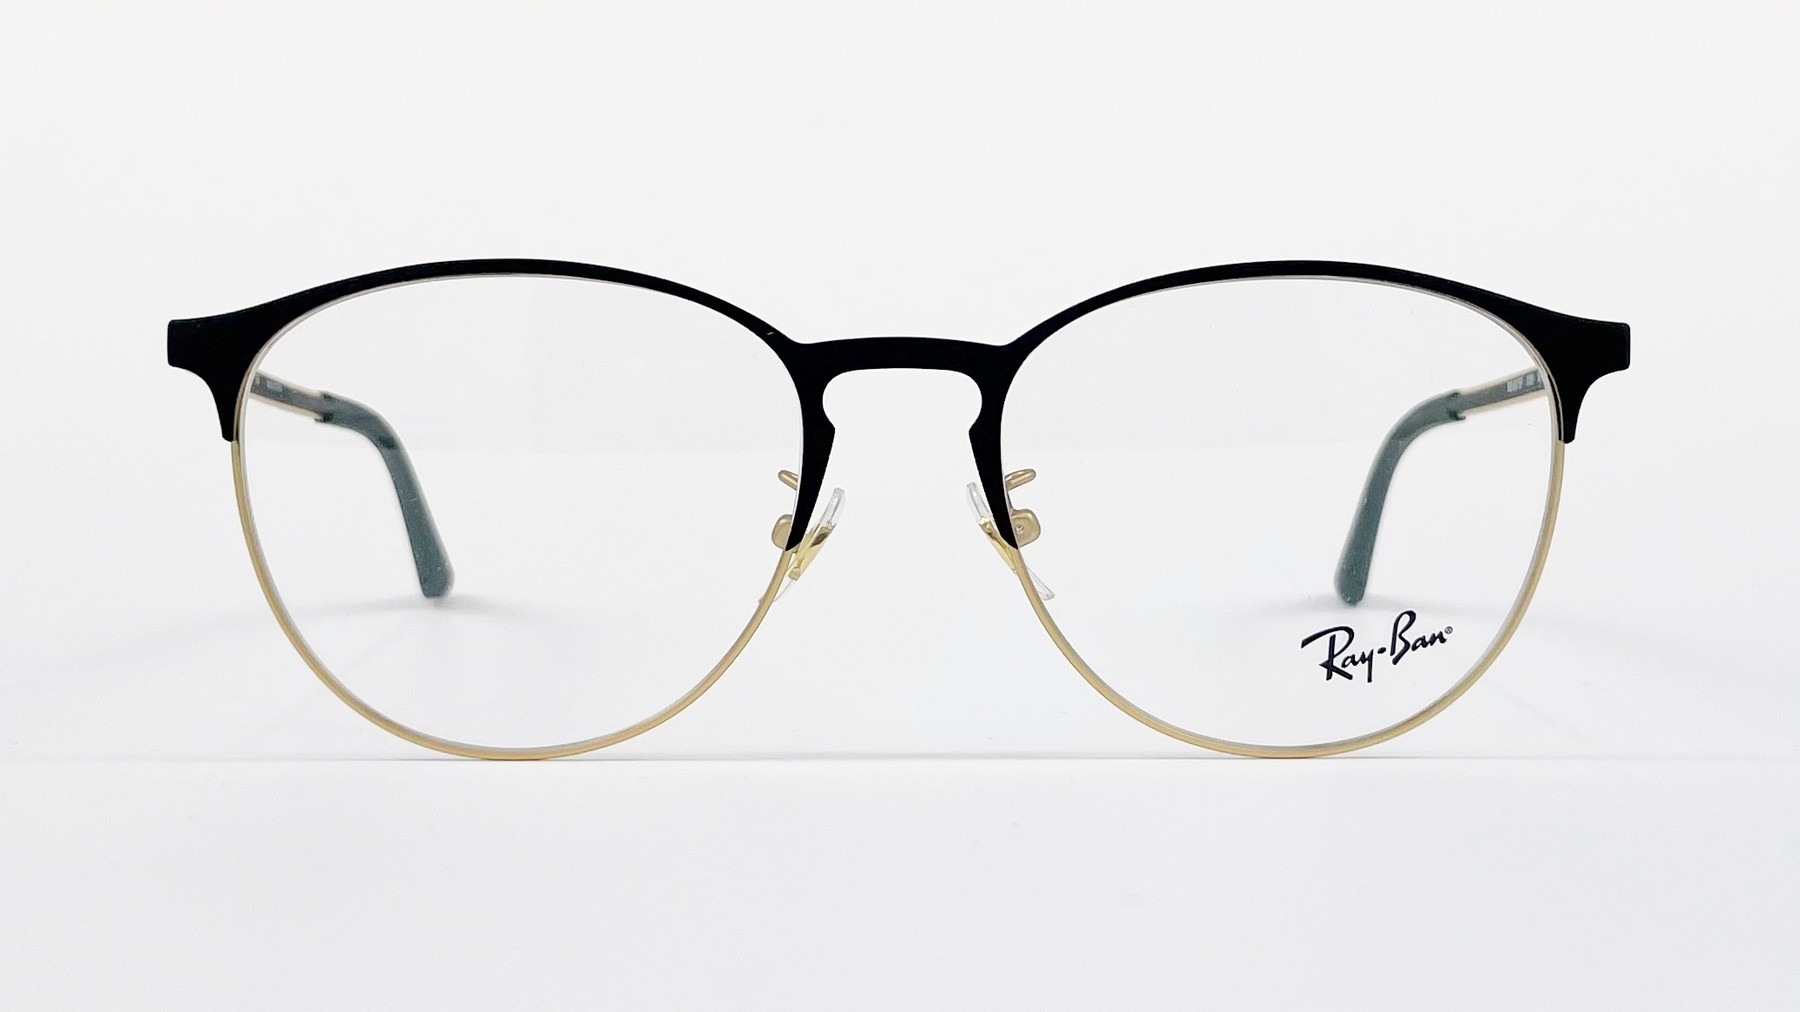 RayBan RB6375F 3051, Korean glasses, sunglasses, eyeglasses, glasses